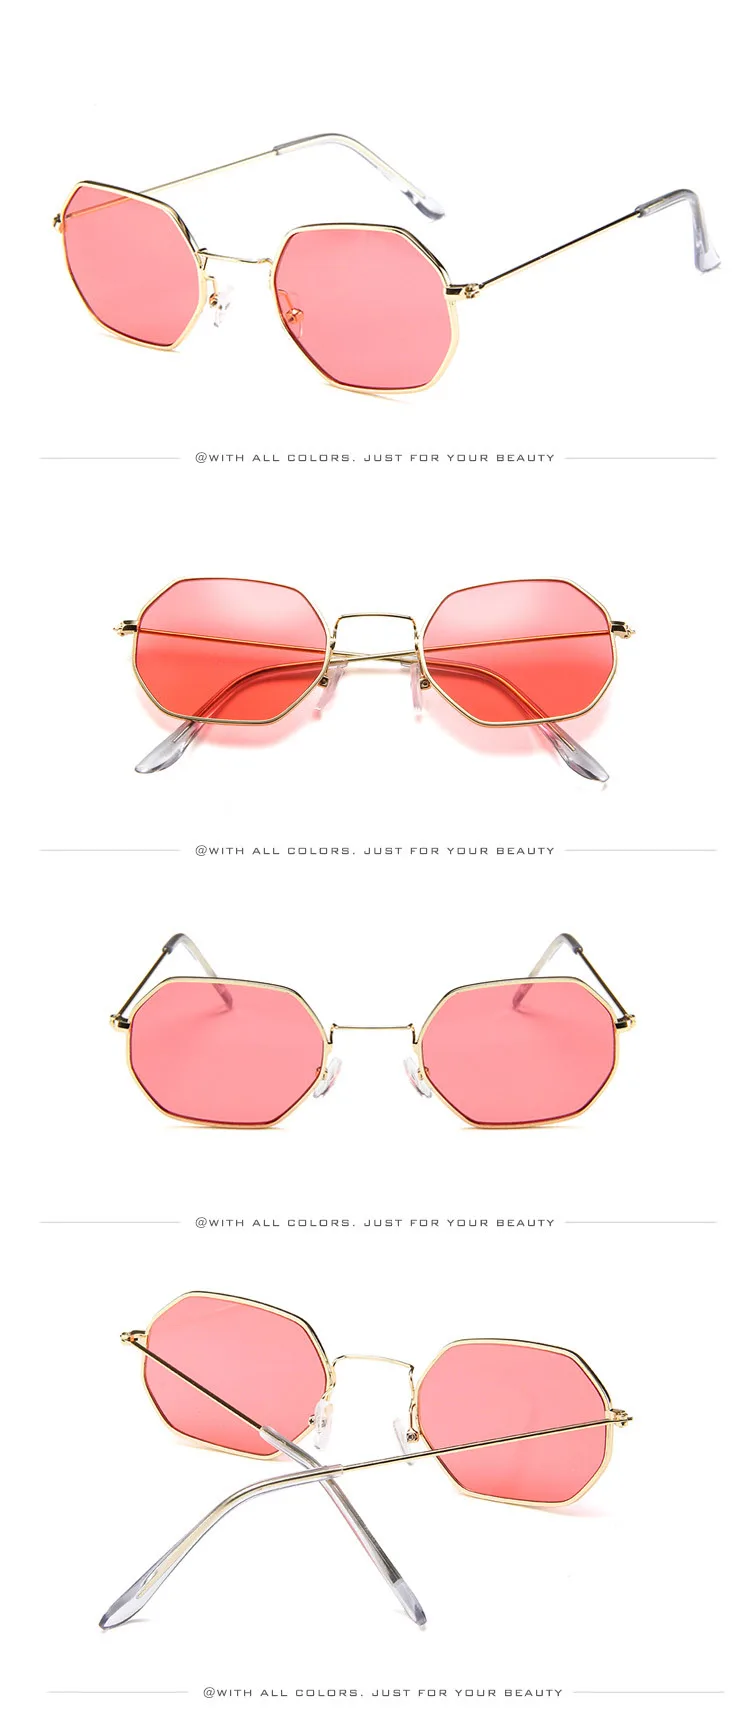 Xinfeite Солнцезащитные очки Модные индивидуальные маленькие металлические полигональные красочные UV400 летние солнцезащитные очки для мужчин и женщин X388